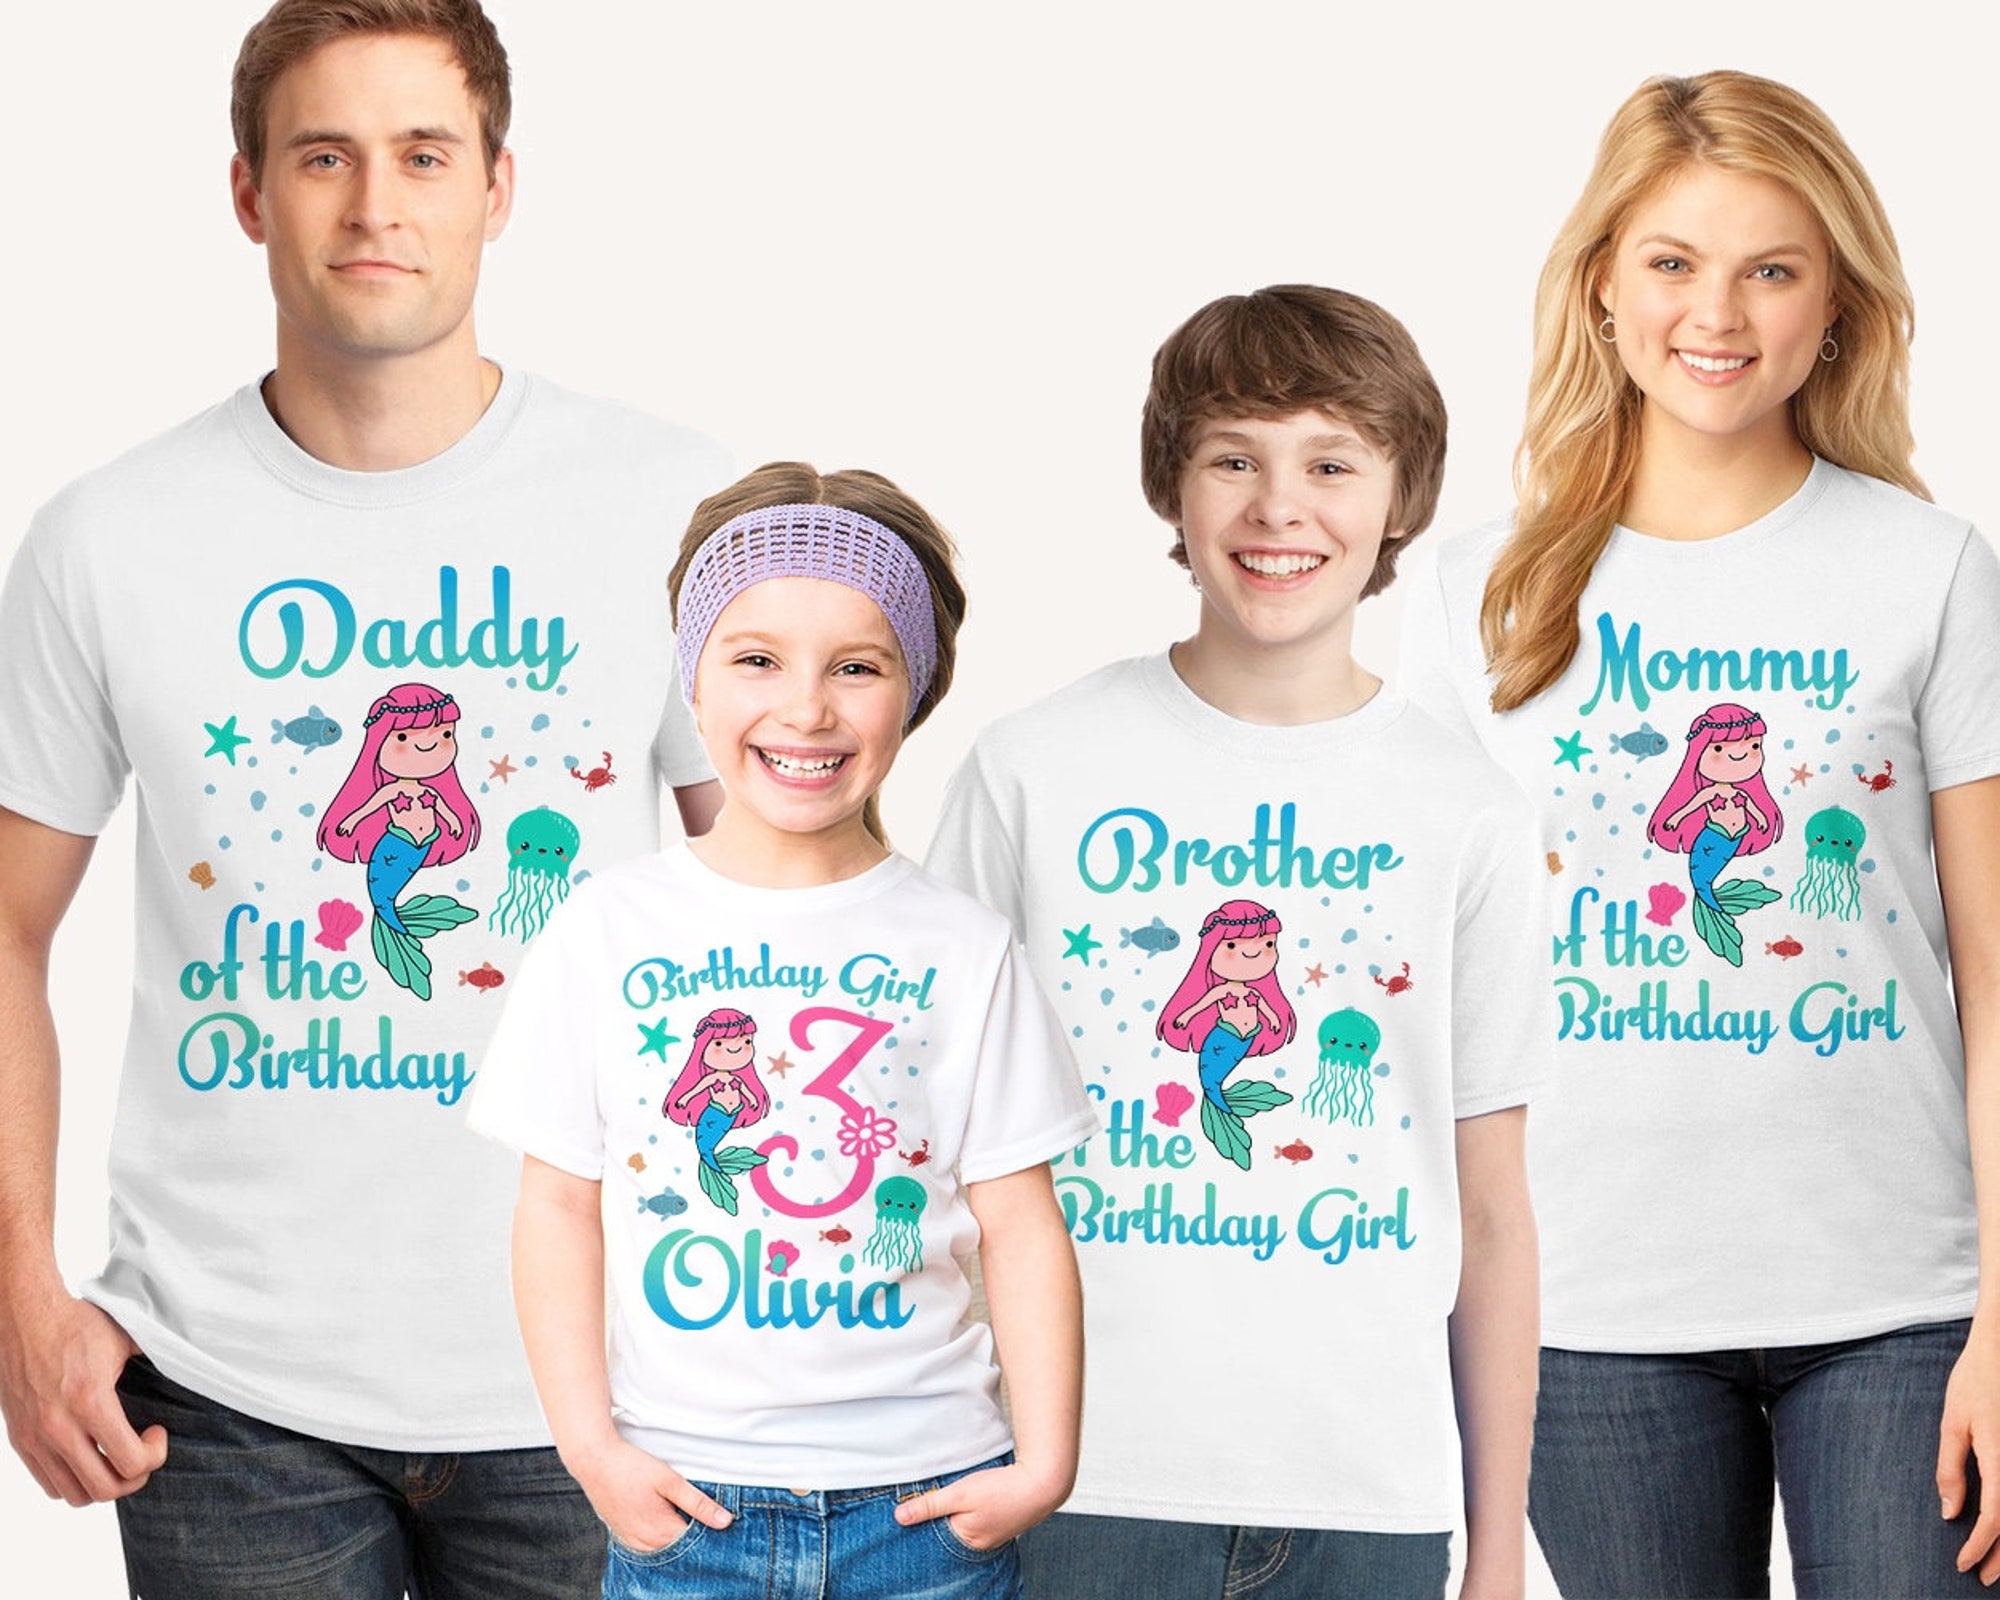 Mermaid birthday shirt, Girl birthday shirt, 3rd birthday shirt, 1st birthday shirt, Ocean birthday shirt, Starfish Octopus shirt white